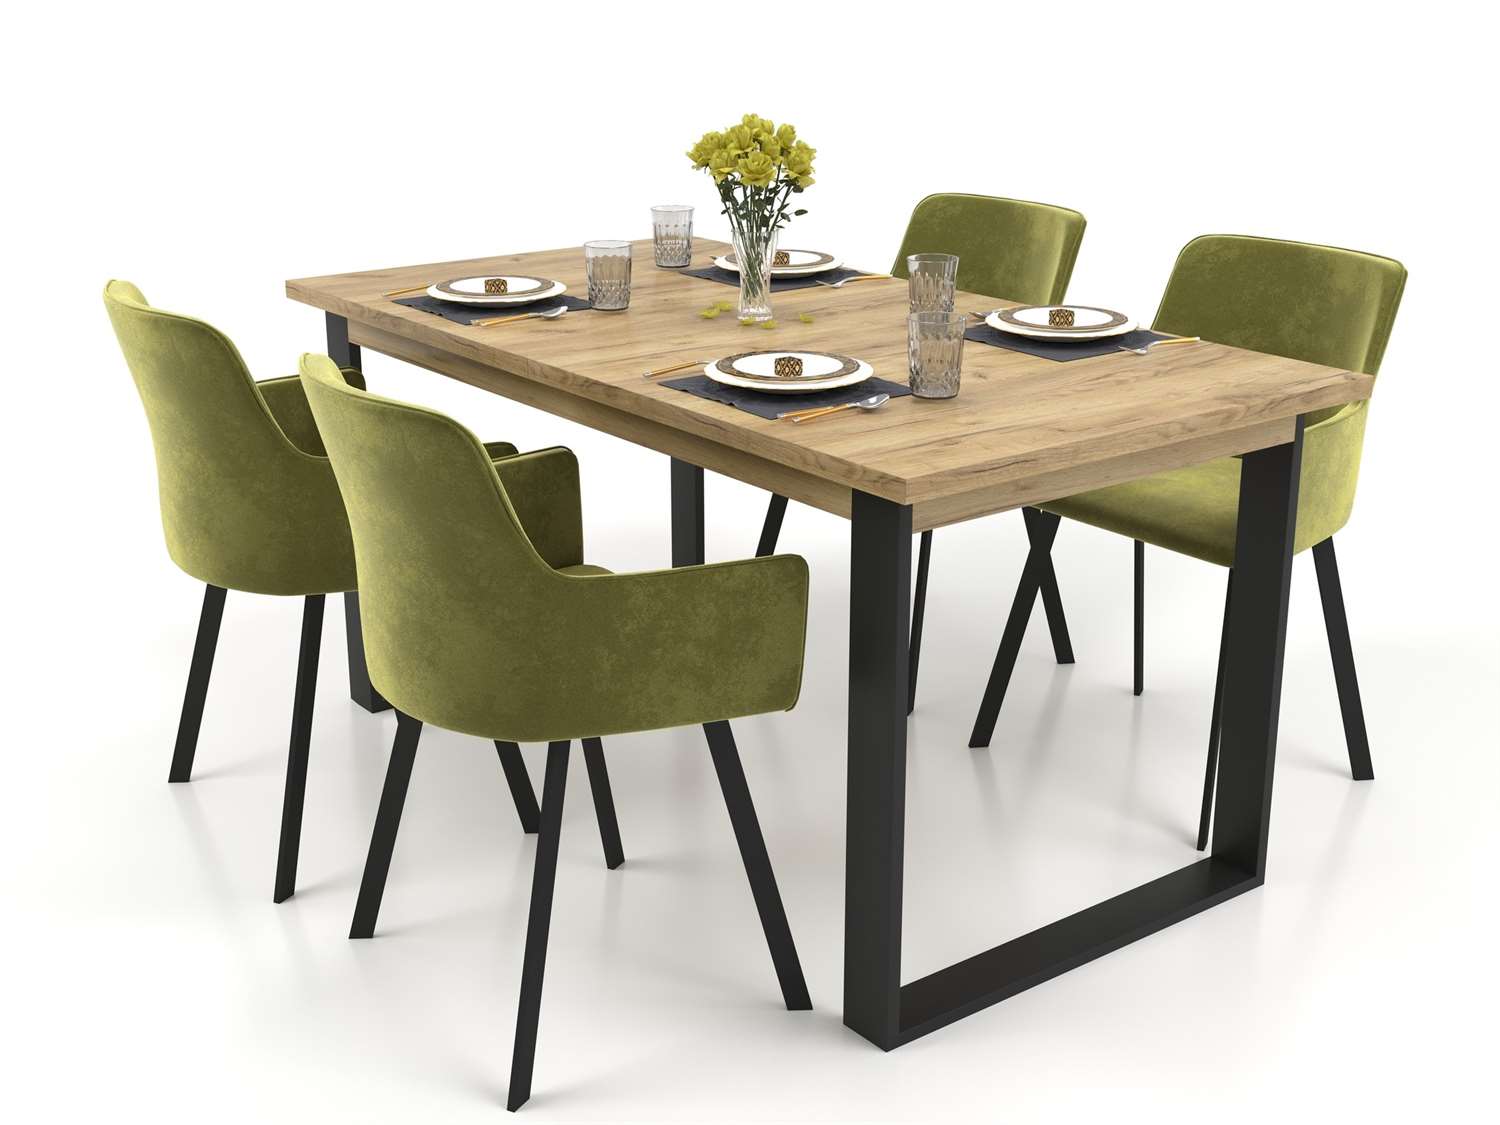 Zestaw mebli VENICE stół rozkładany 150-190 cm z 4 krzesłami